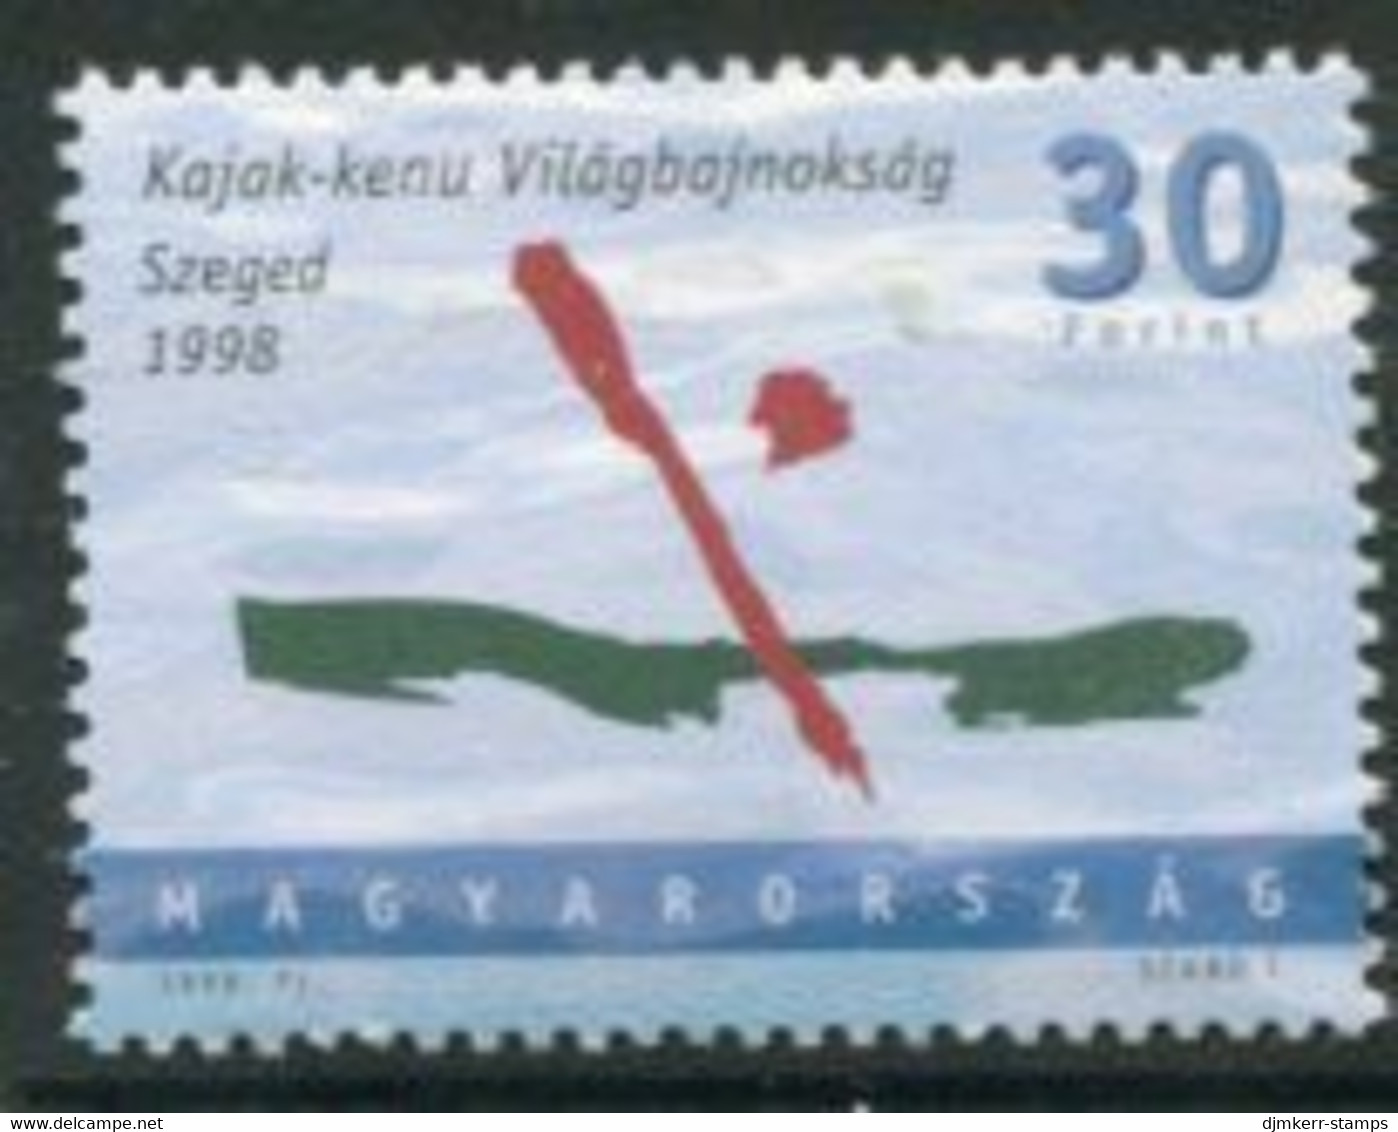 HUNGARY 1998 Canoeing World Championship MNH / **.  Michel 4503 - Ongebruikt